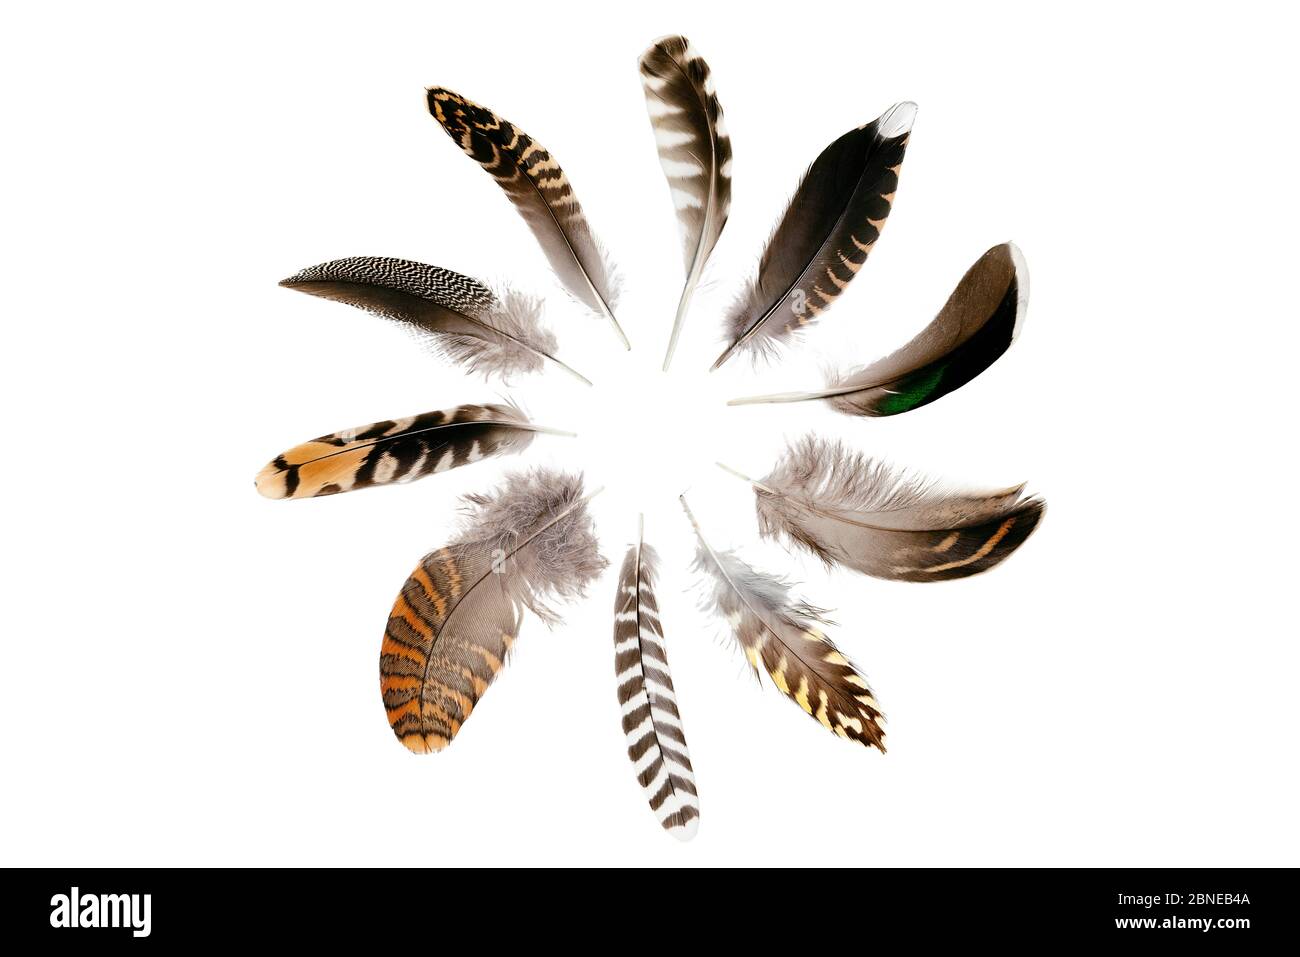 Les plumes de la proie du faucon pèlerin (Falco peregrinus) restent en collision à Bristol en hiver. Sens horaire du haut - whimrel, boisée, sarcelle, sarcelle, g Banque D'Images